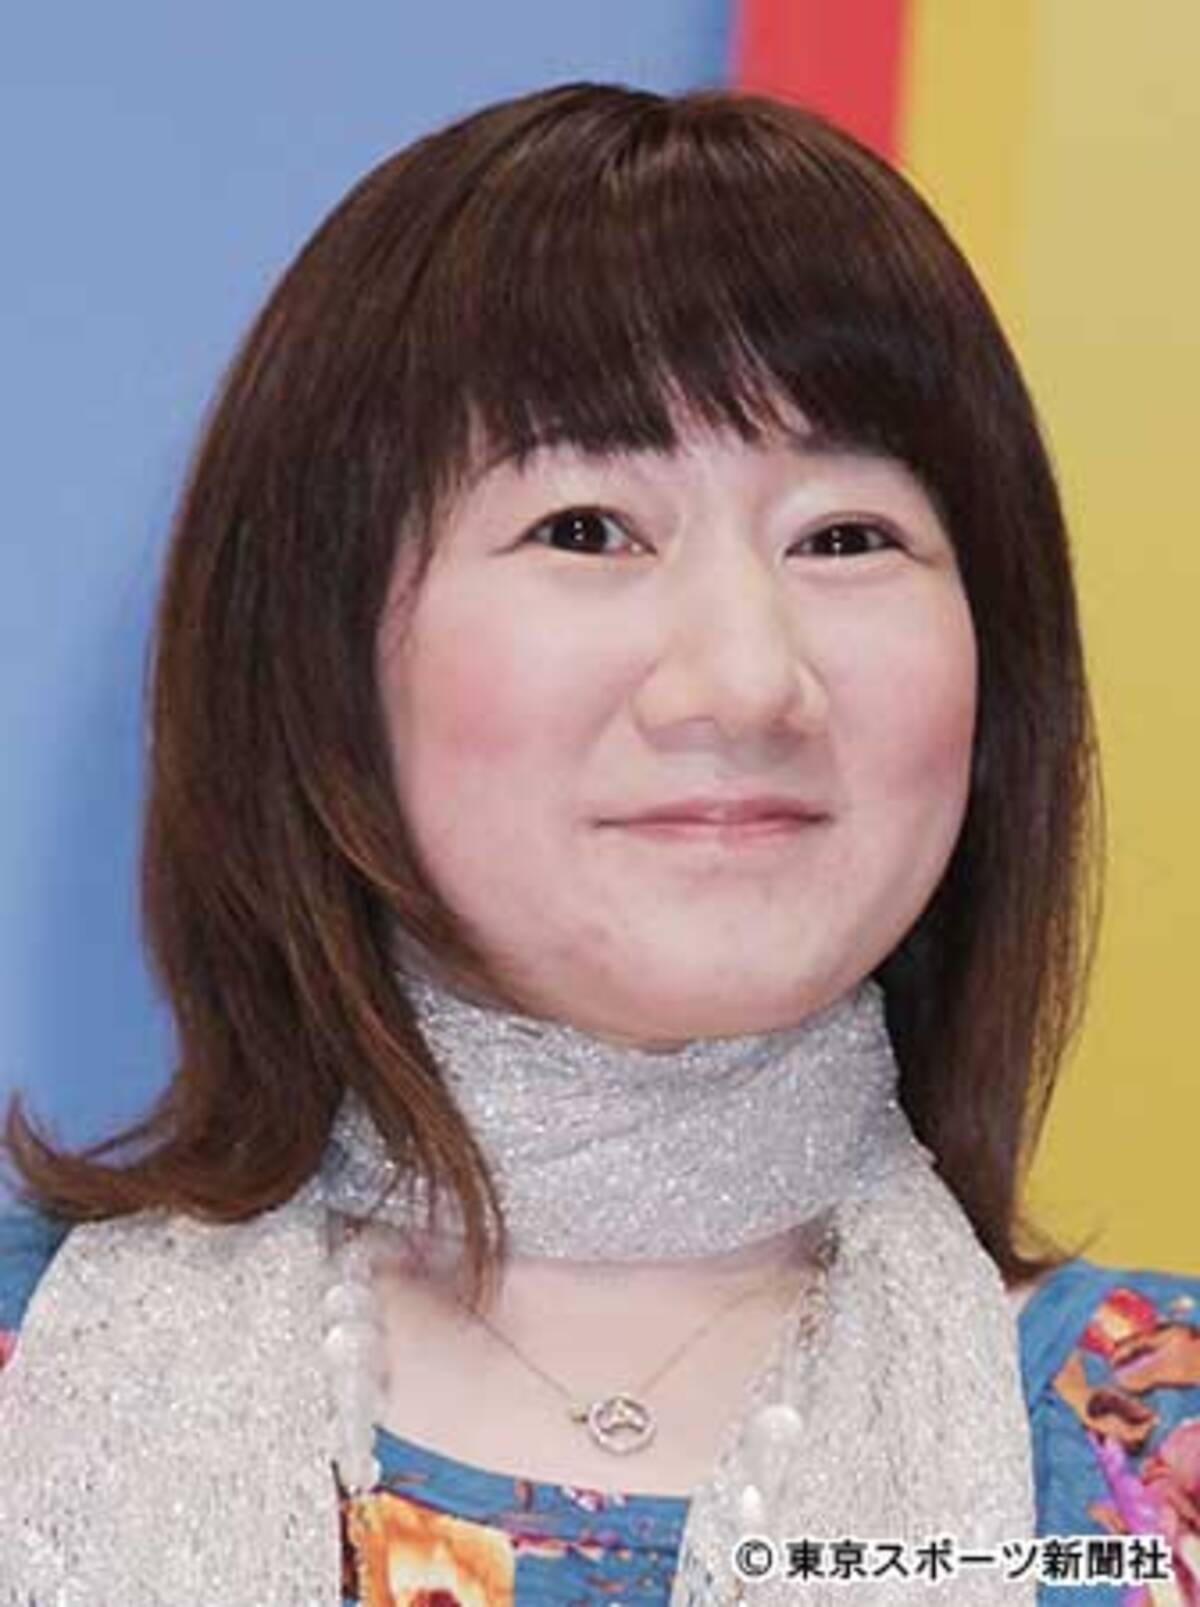 クレヨンしんちゃん 声優 矢島晶子が降板 自然な表現できにくくなった 2018年6月2日 エキサイトニュース